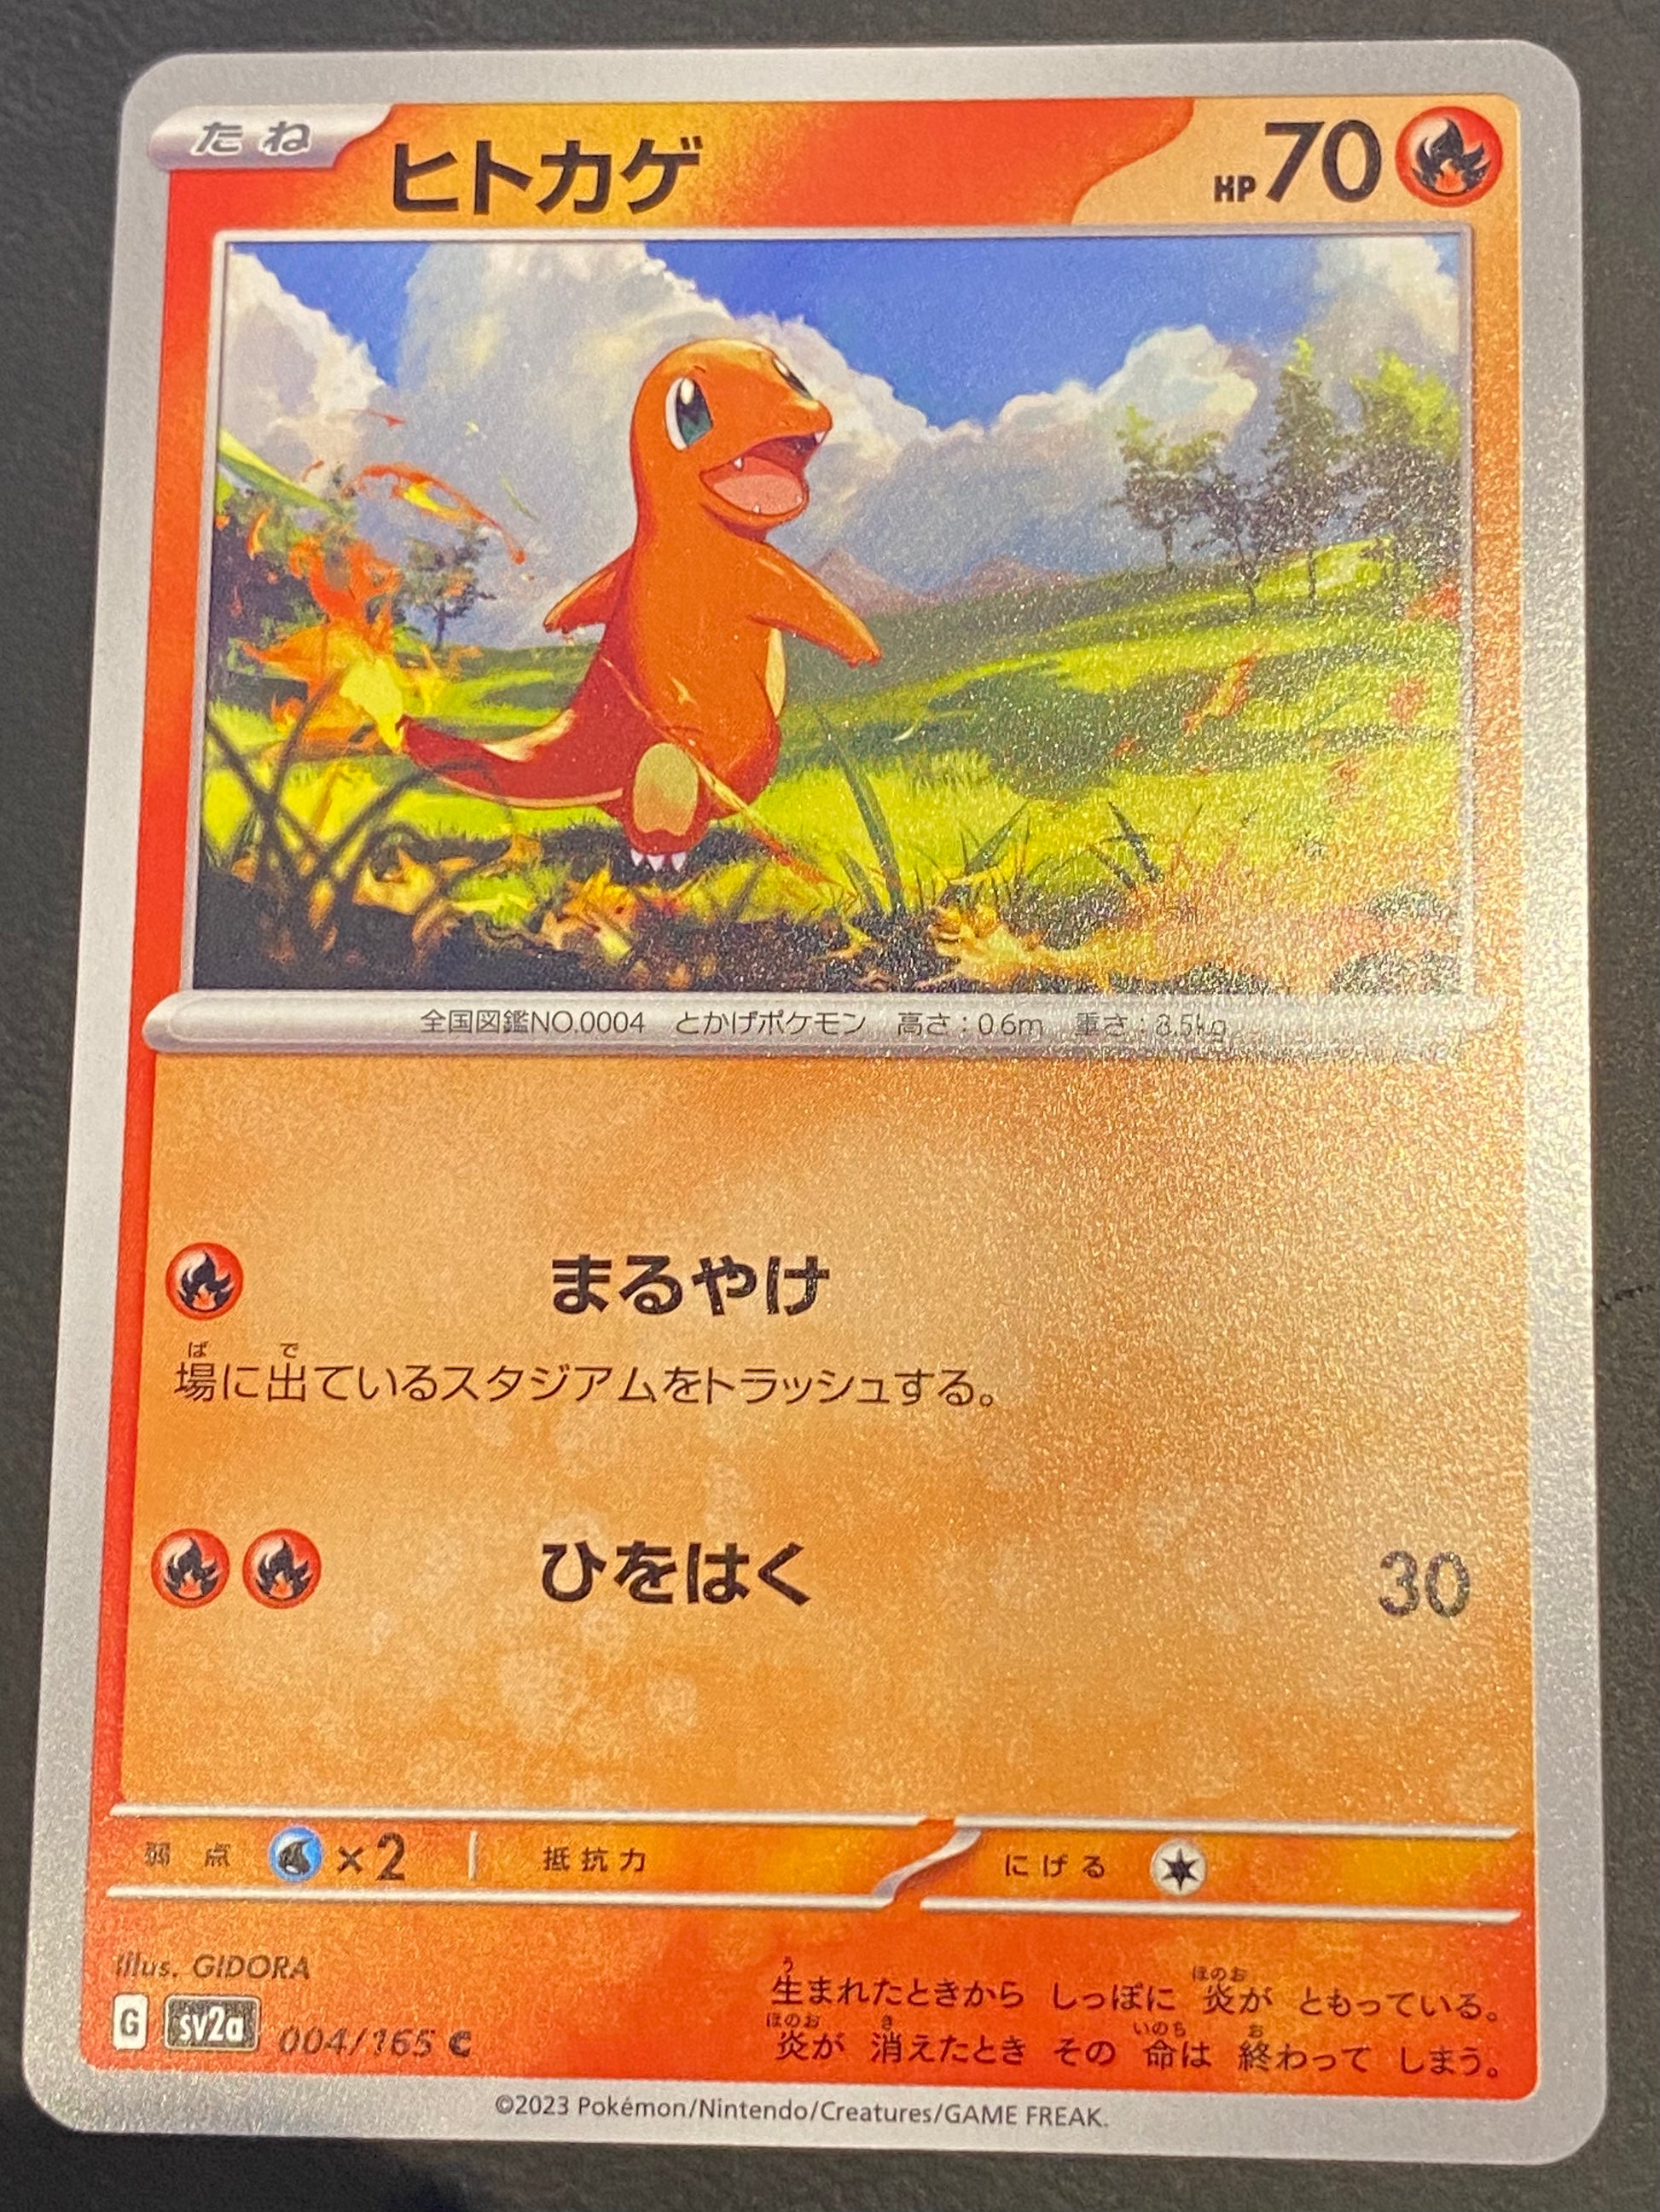 Display Pokemon 151 [SV2A] - Japan Collector